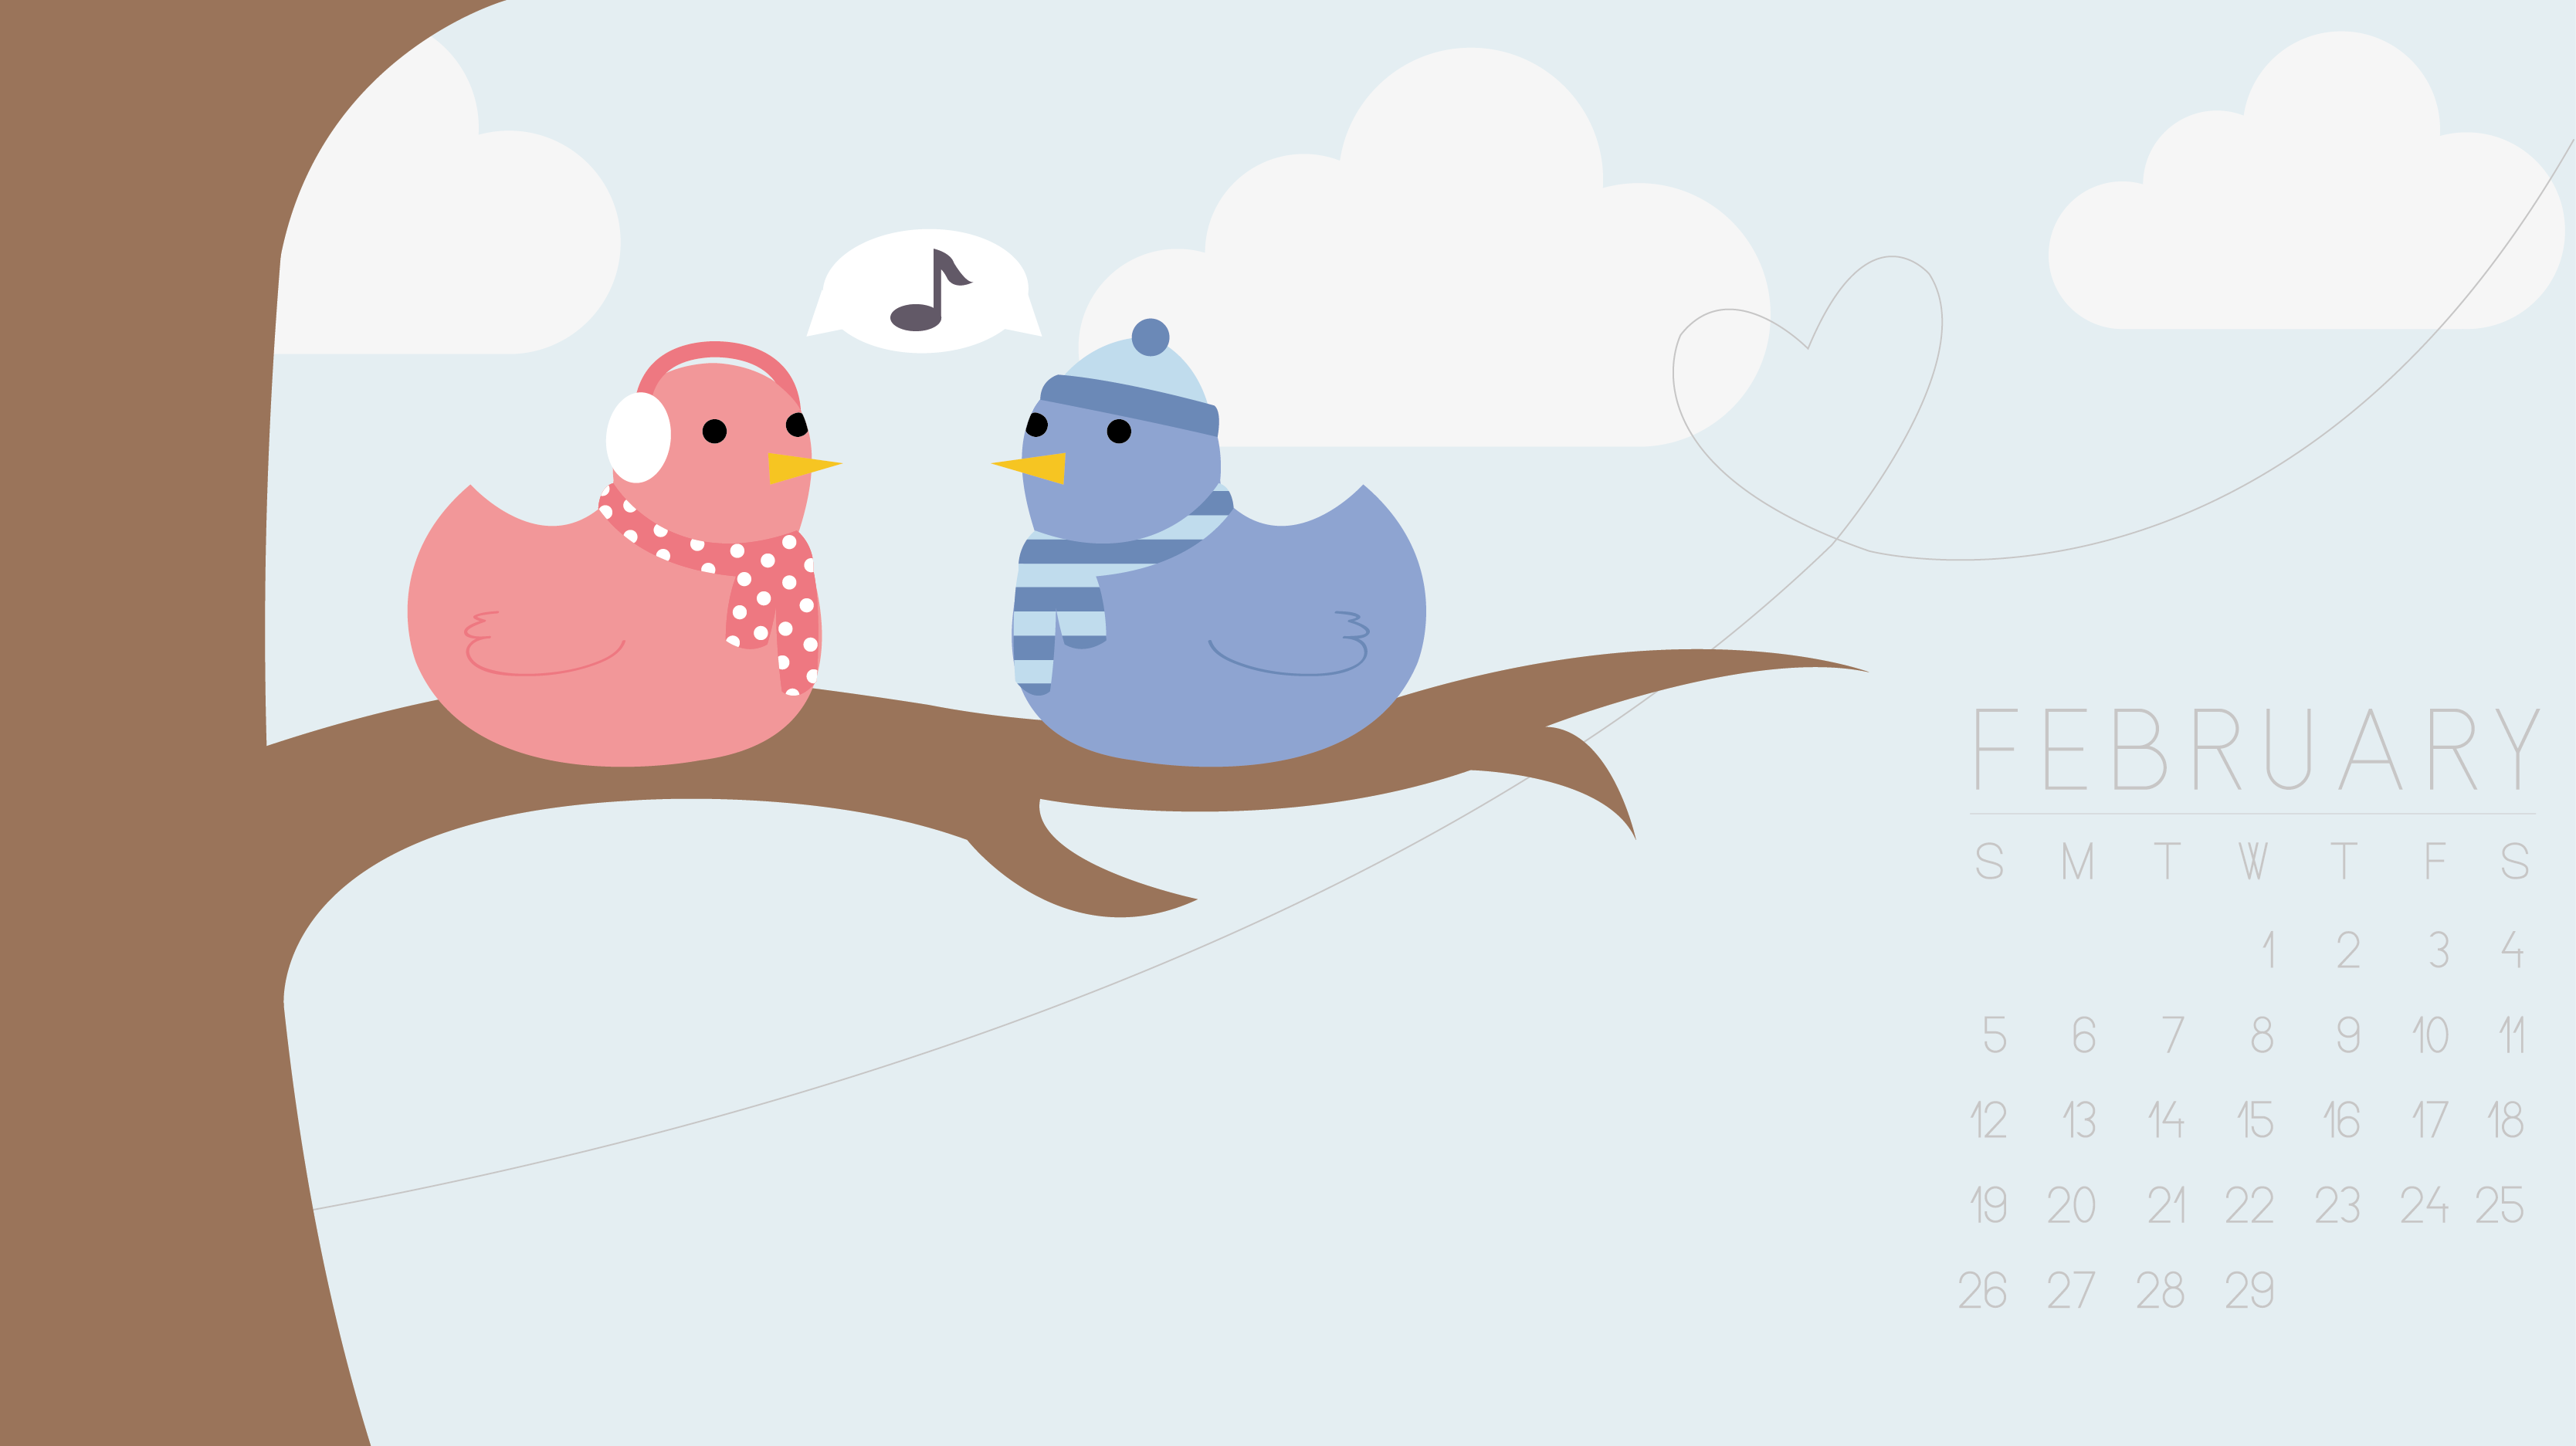 February 2012 Desktop Wallpaper - Birds by technicolorblackout